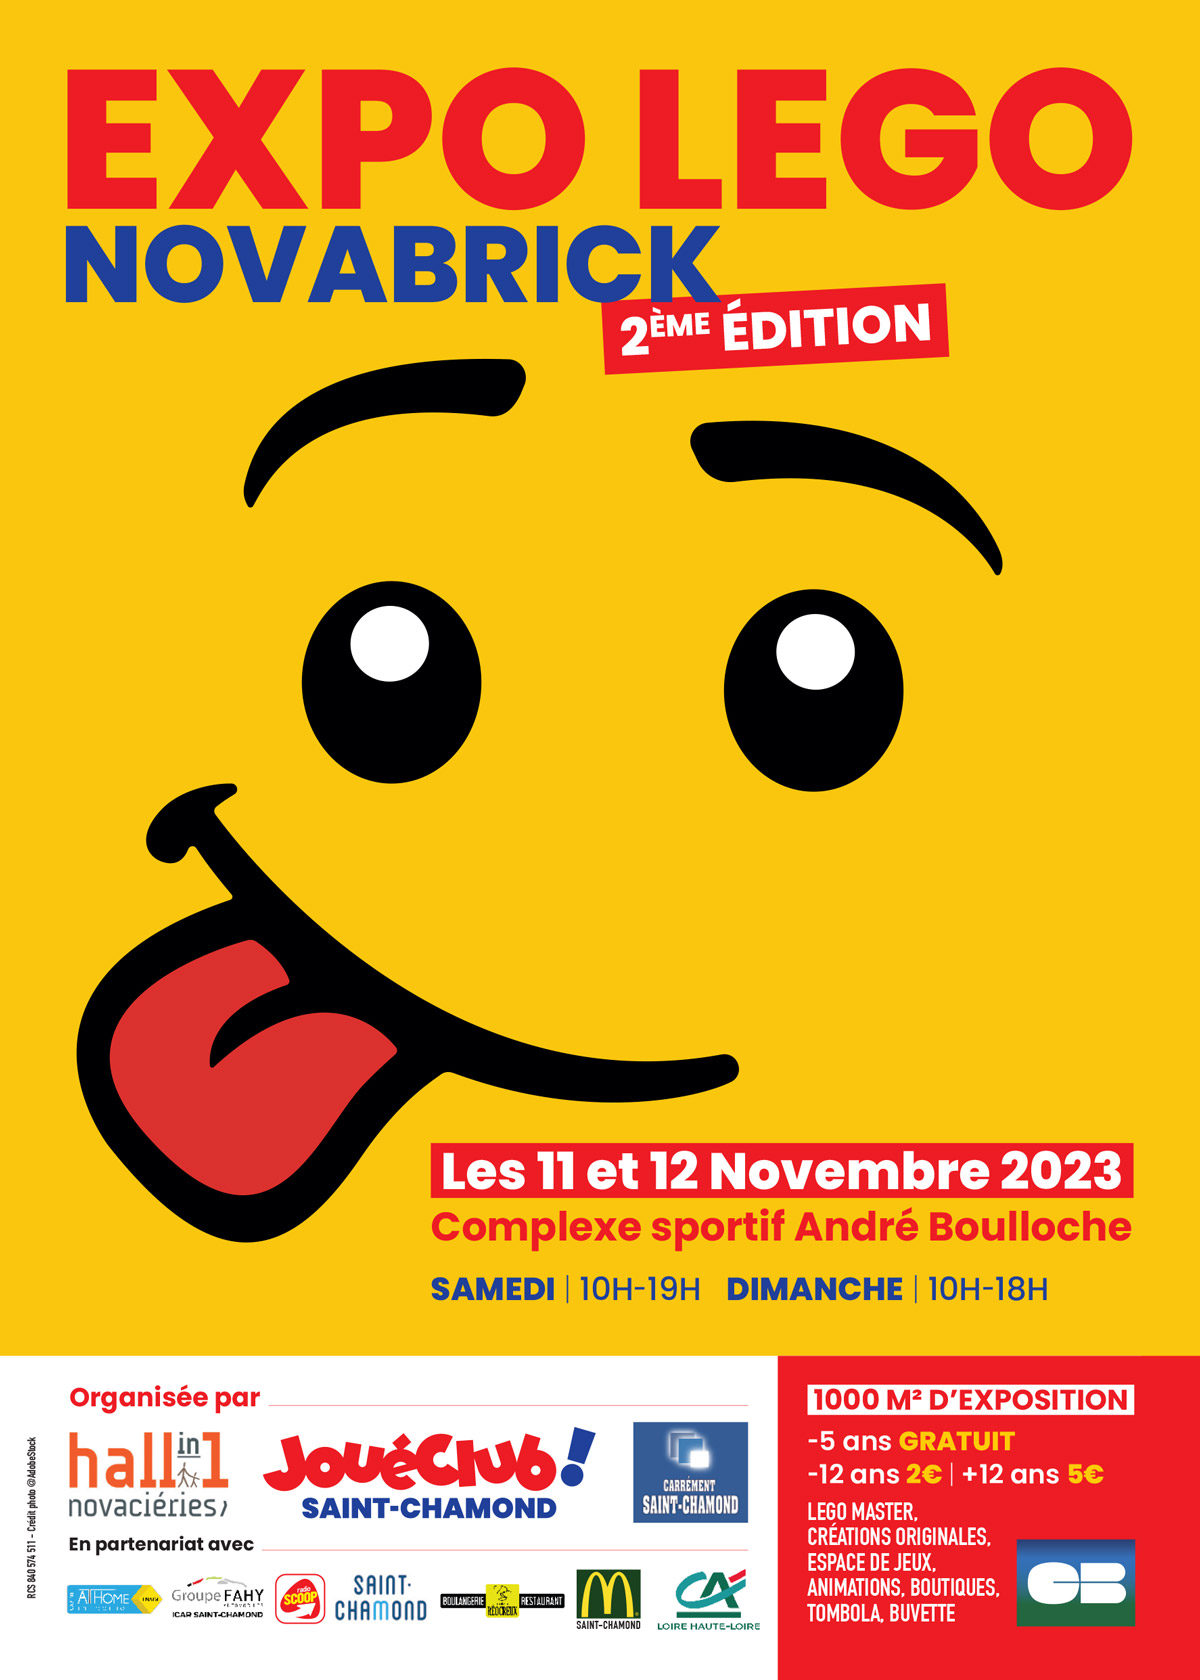 Saint-Chamond. Presque 7 000 entrées pour l'expo Lego : les organisateurs  cherchent « un lieu plus adapté » pour 2025